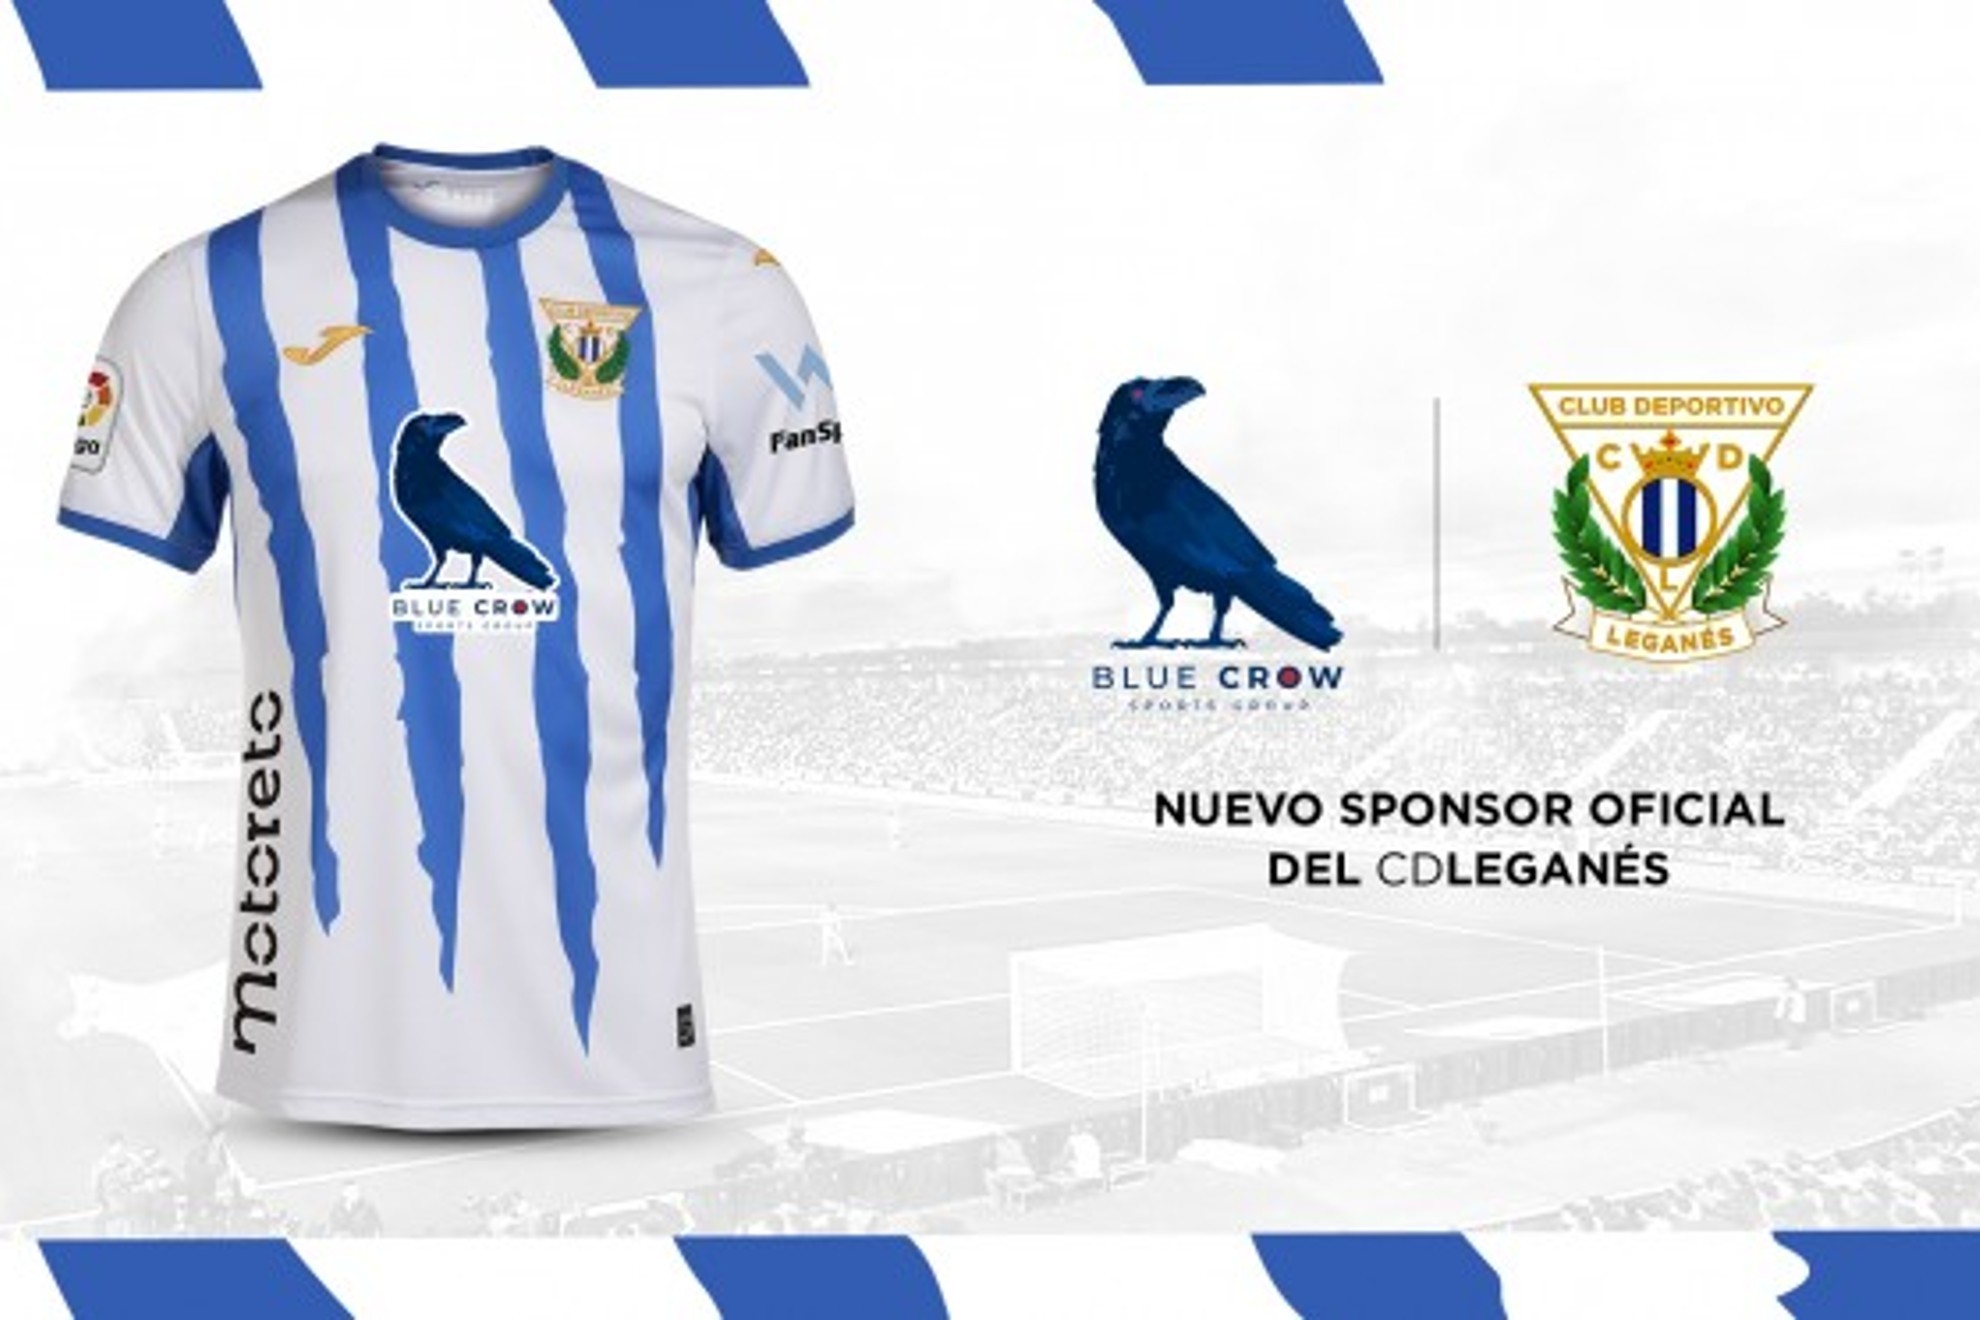 La marca de los dueños, Blue Crow Sports Group, patrocinará al Lega